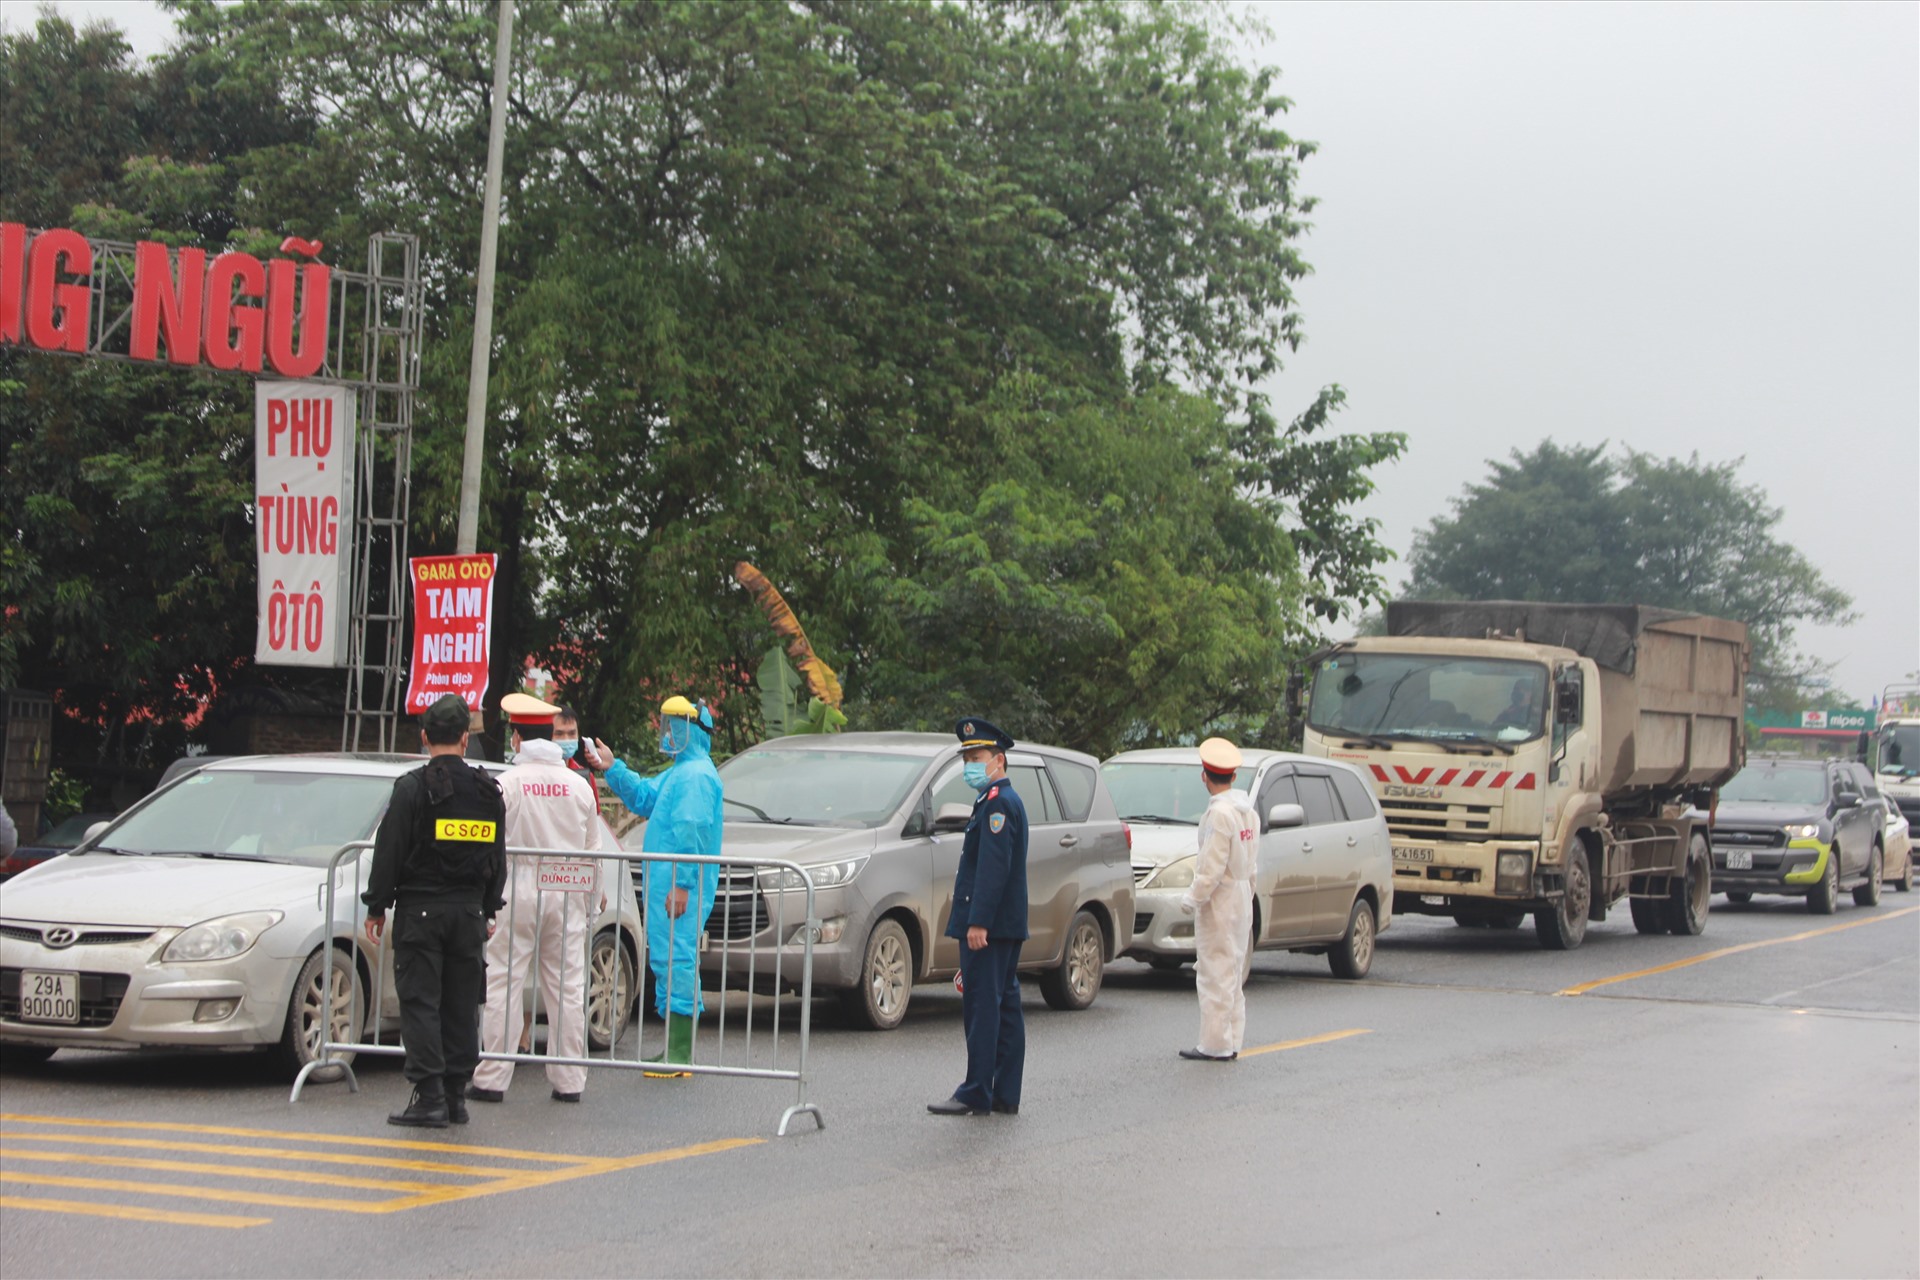 Tương tự, tại khu vực cầu Xuân Mai (trên trục đường mòn Hồ Chí Minh) dẫn vào Hà Nội, một chốt chặn khác cũng được lực lượng công an dựng lên để kiểm tra các xe từ ngoài Thành phố vào trung tâm.